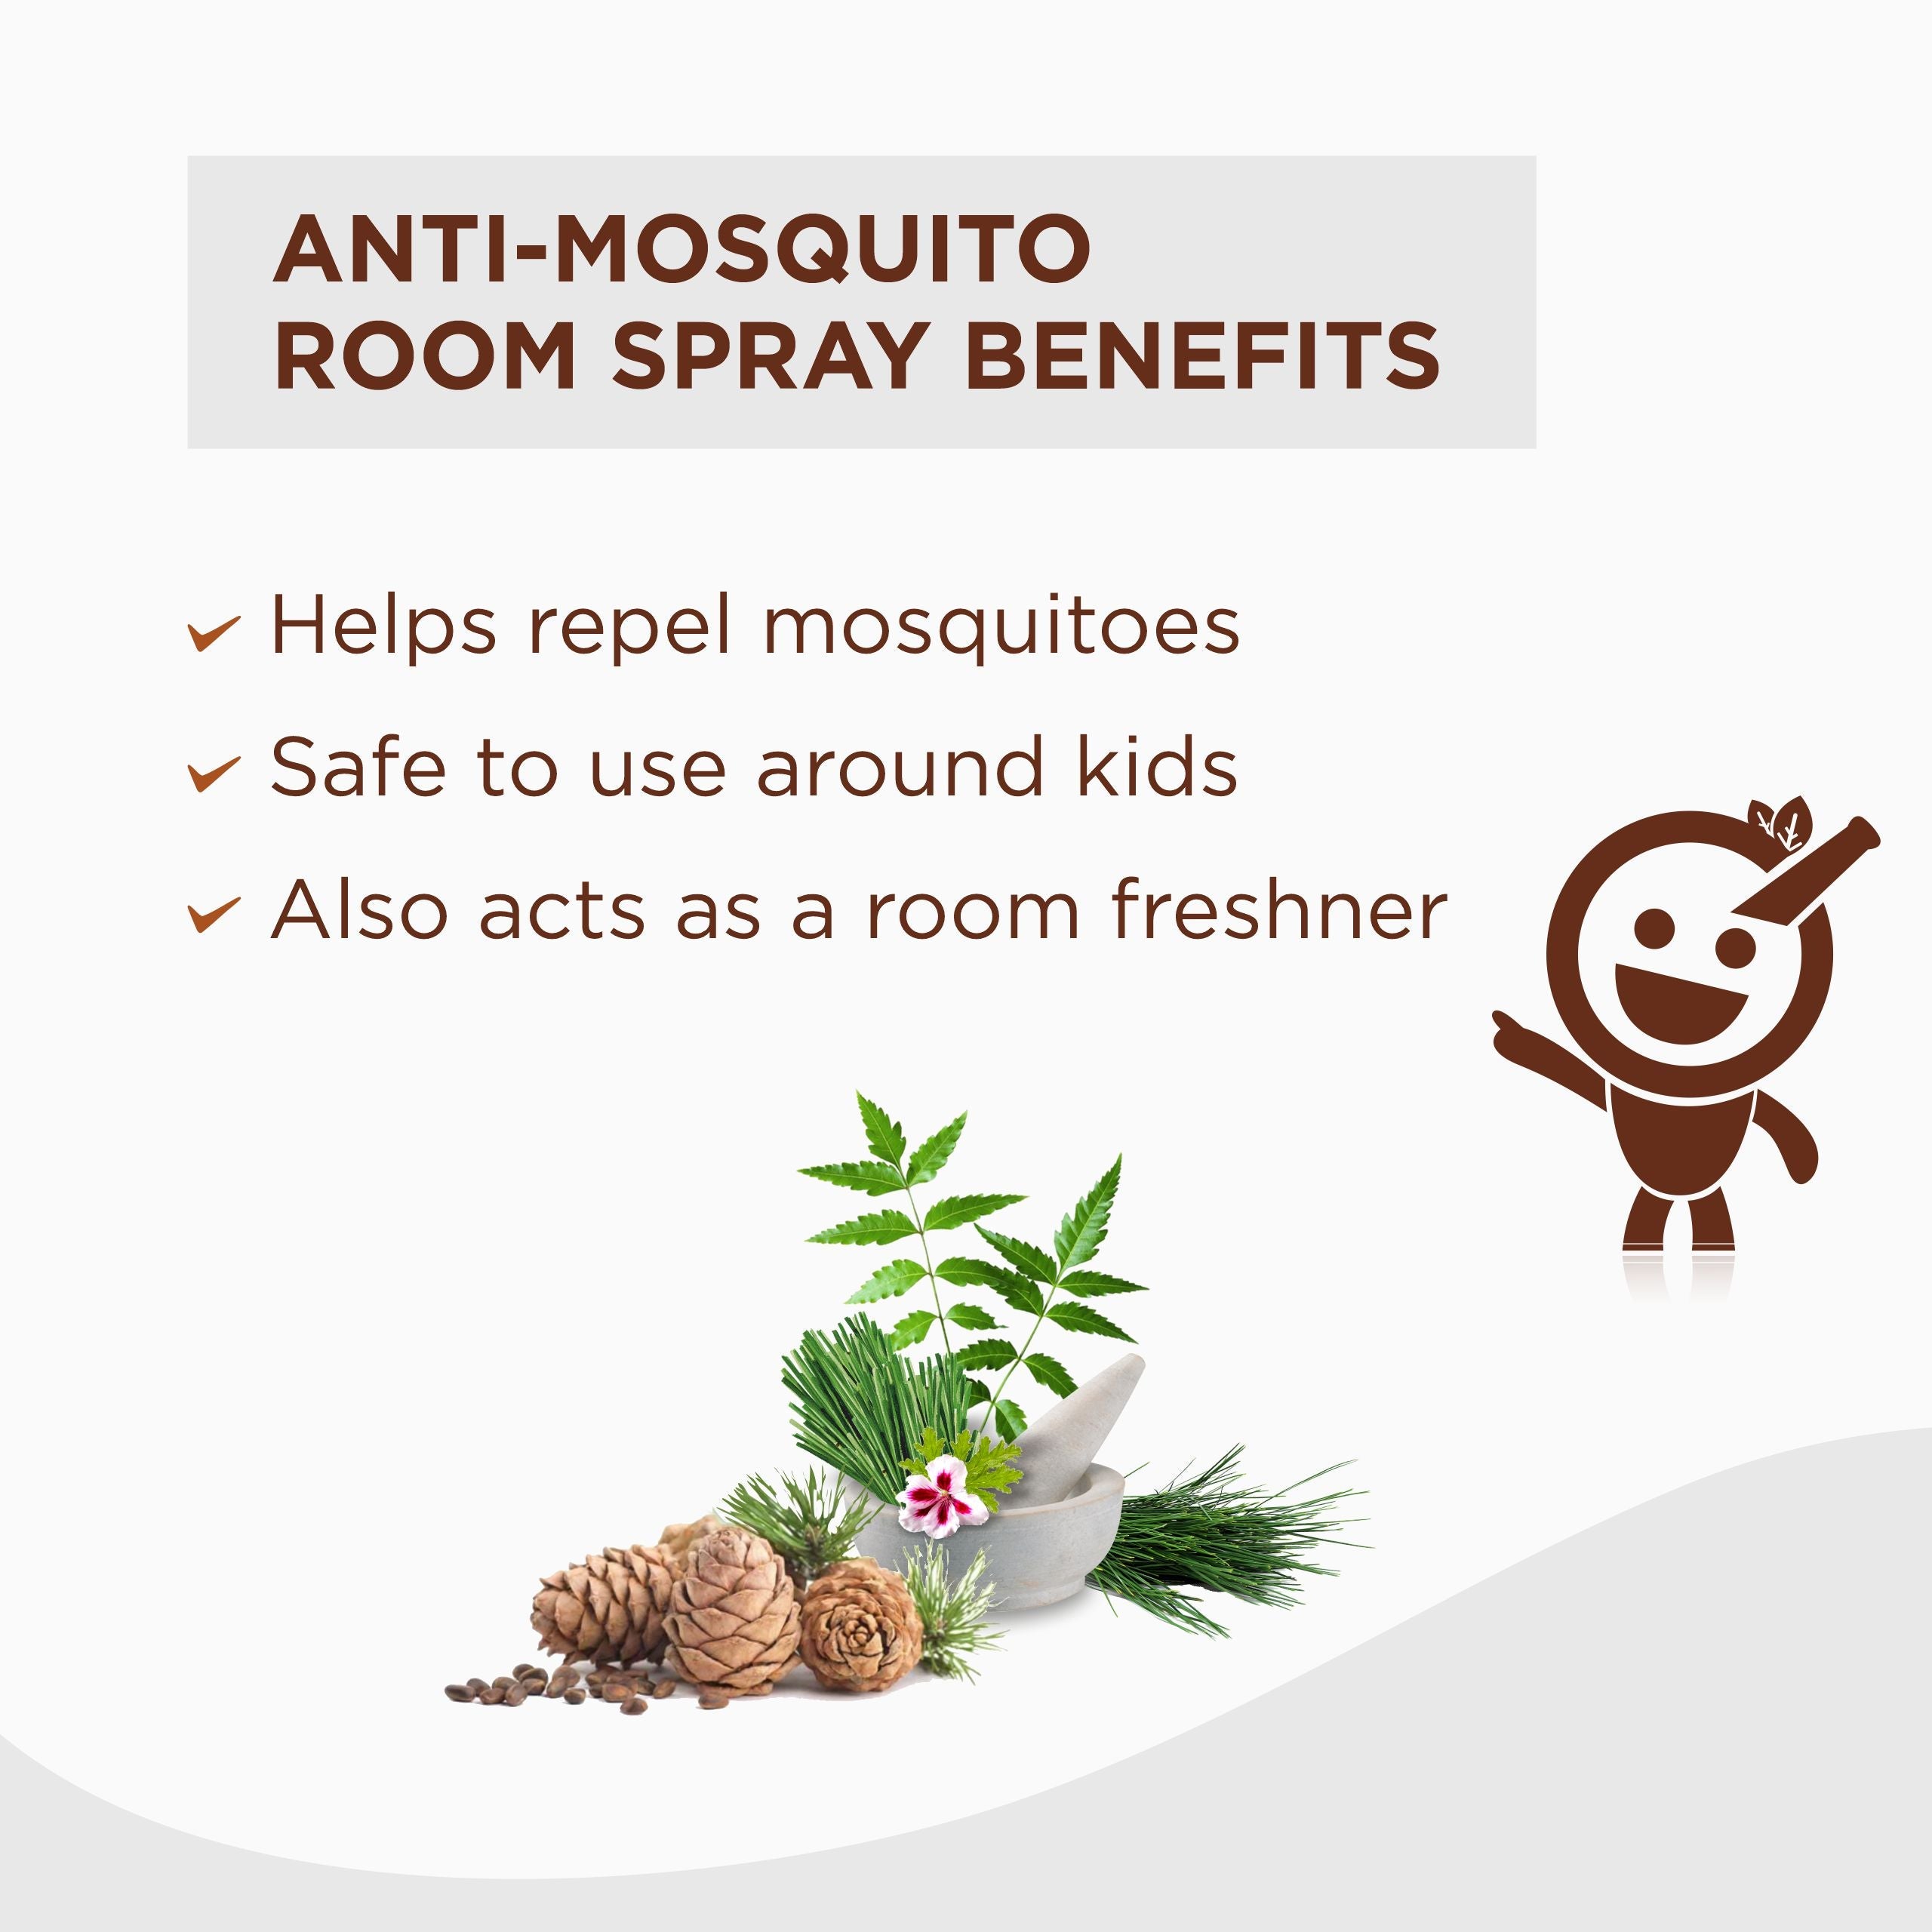 Vitro Anti Mosquito Room Spray (Refill Pouch)